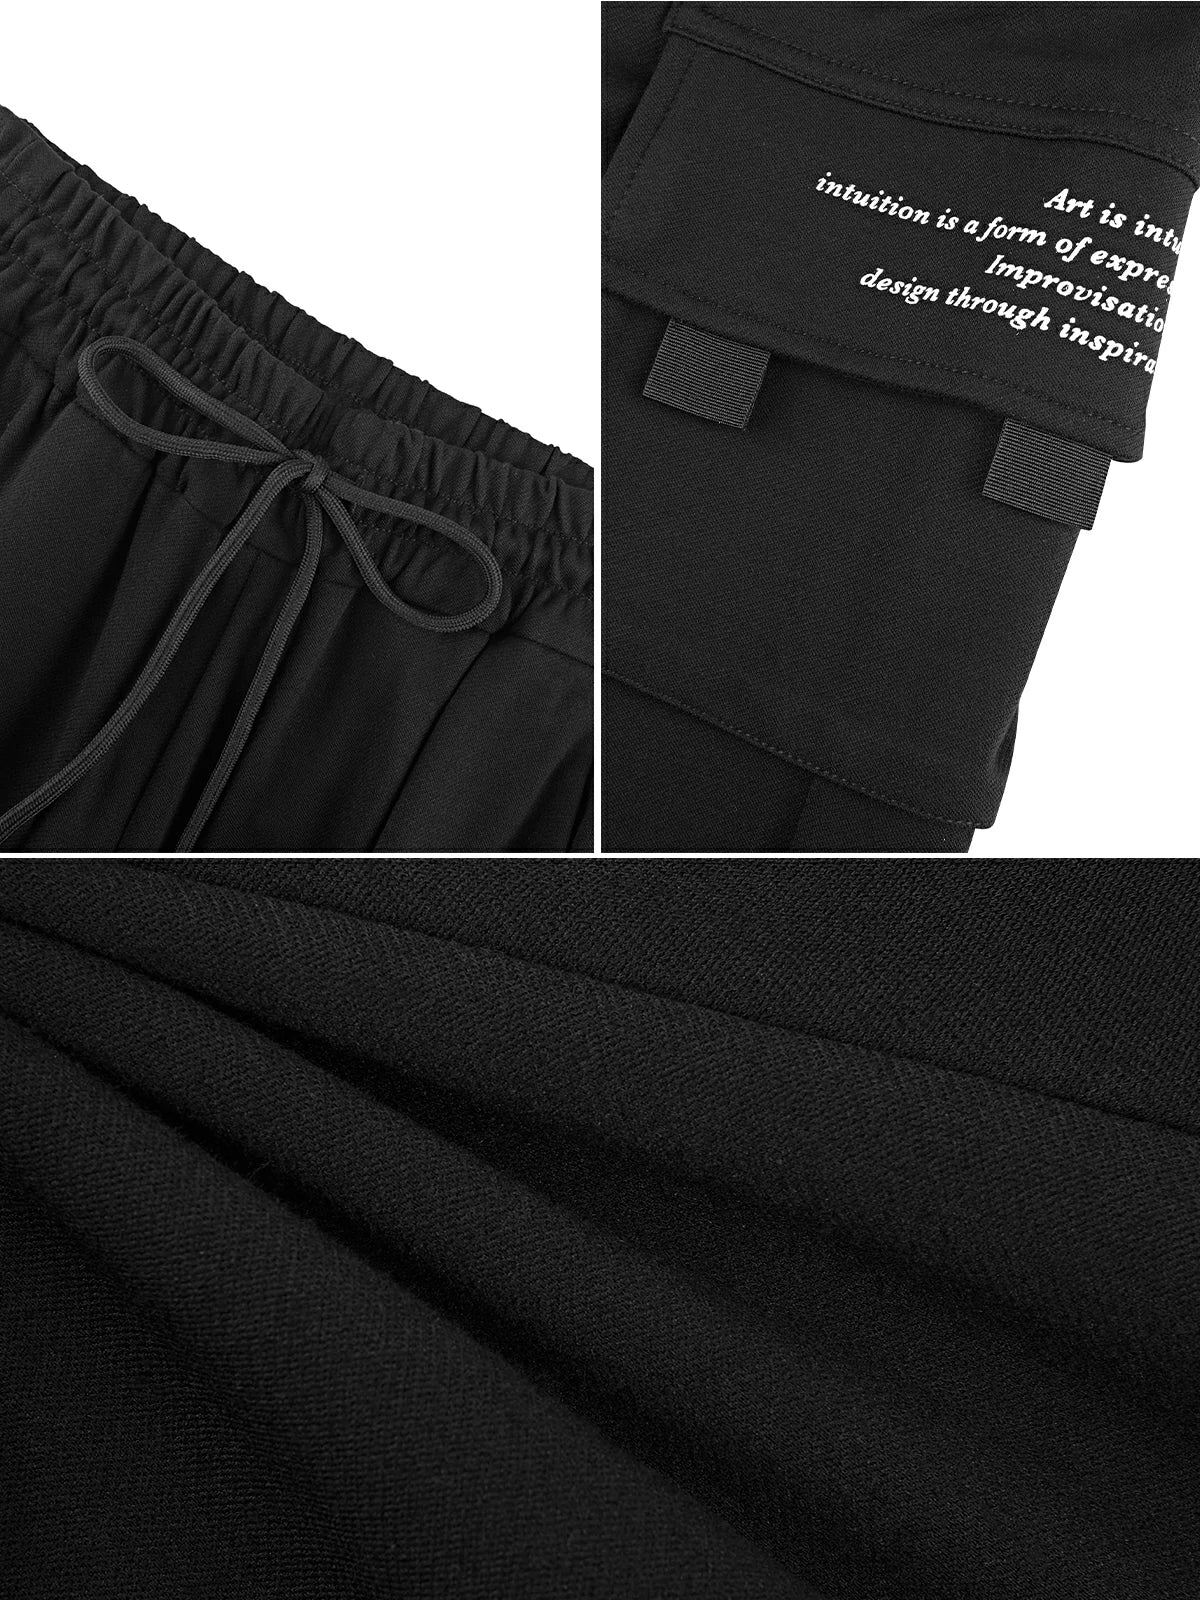 Drawstring Printed Pockets Cargo Pants